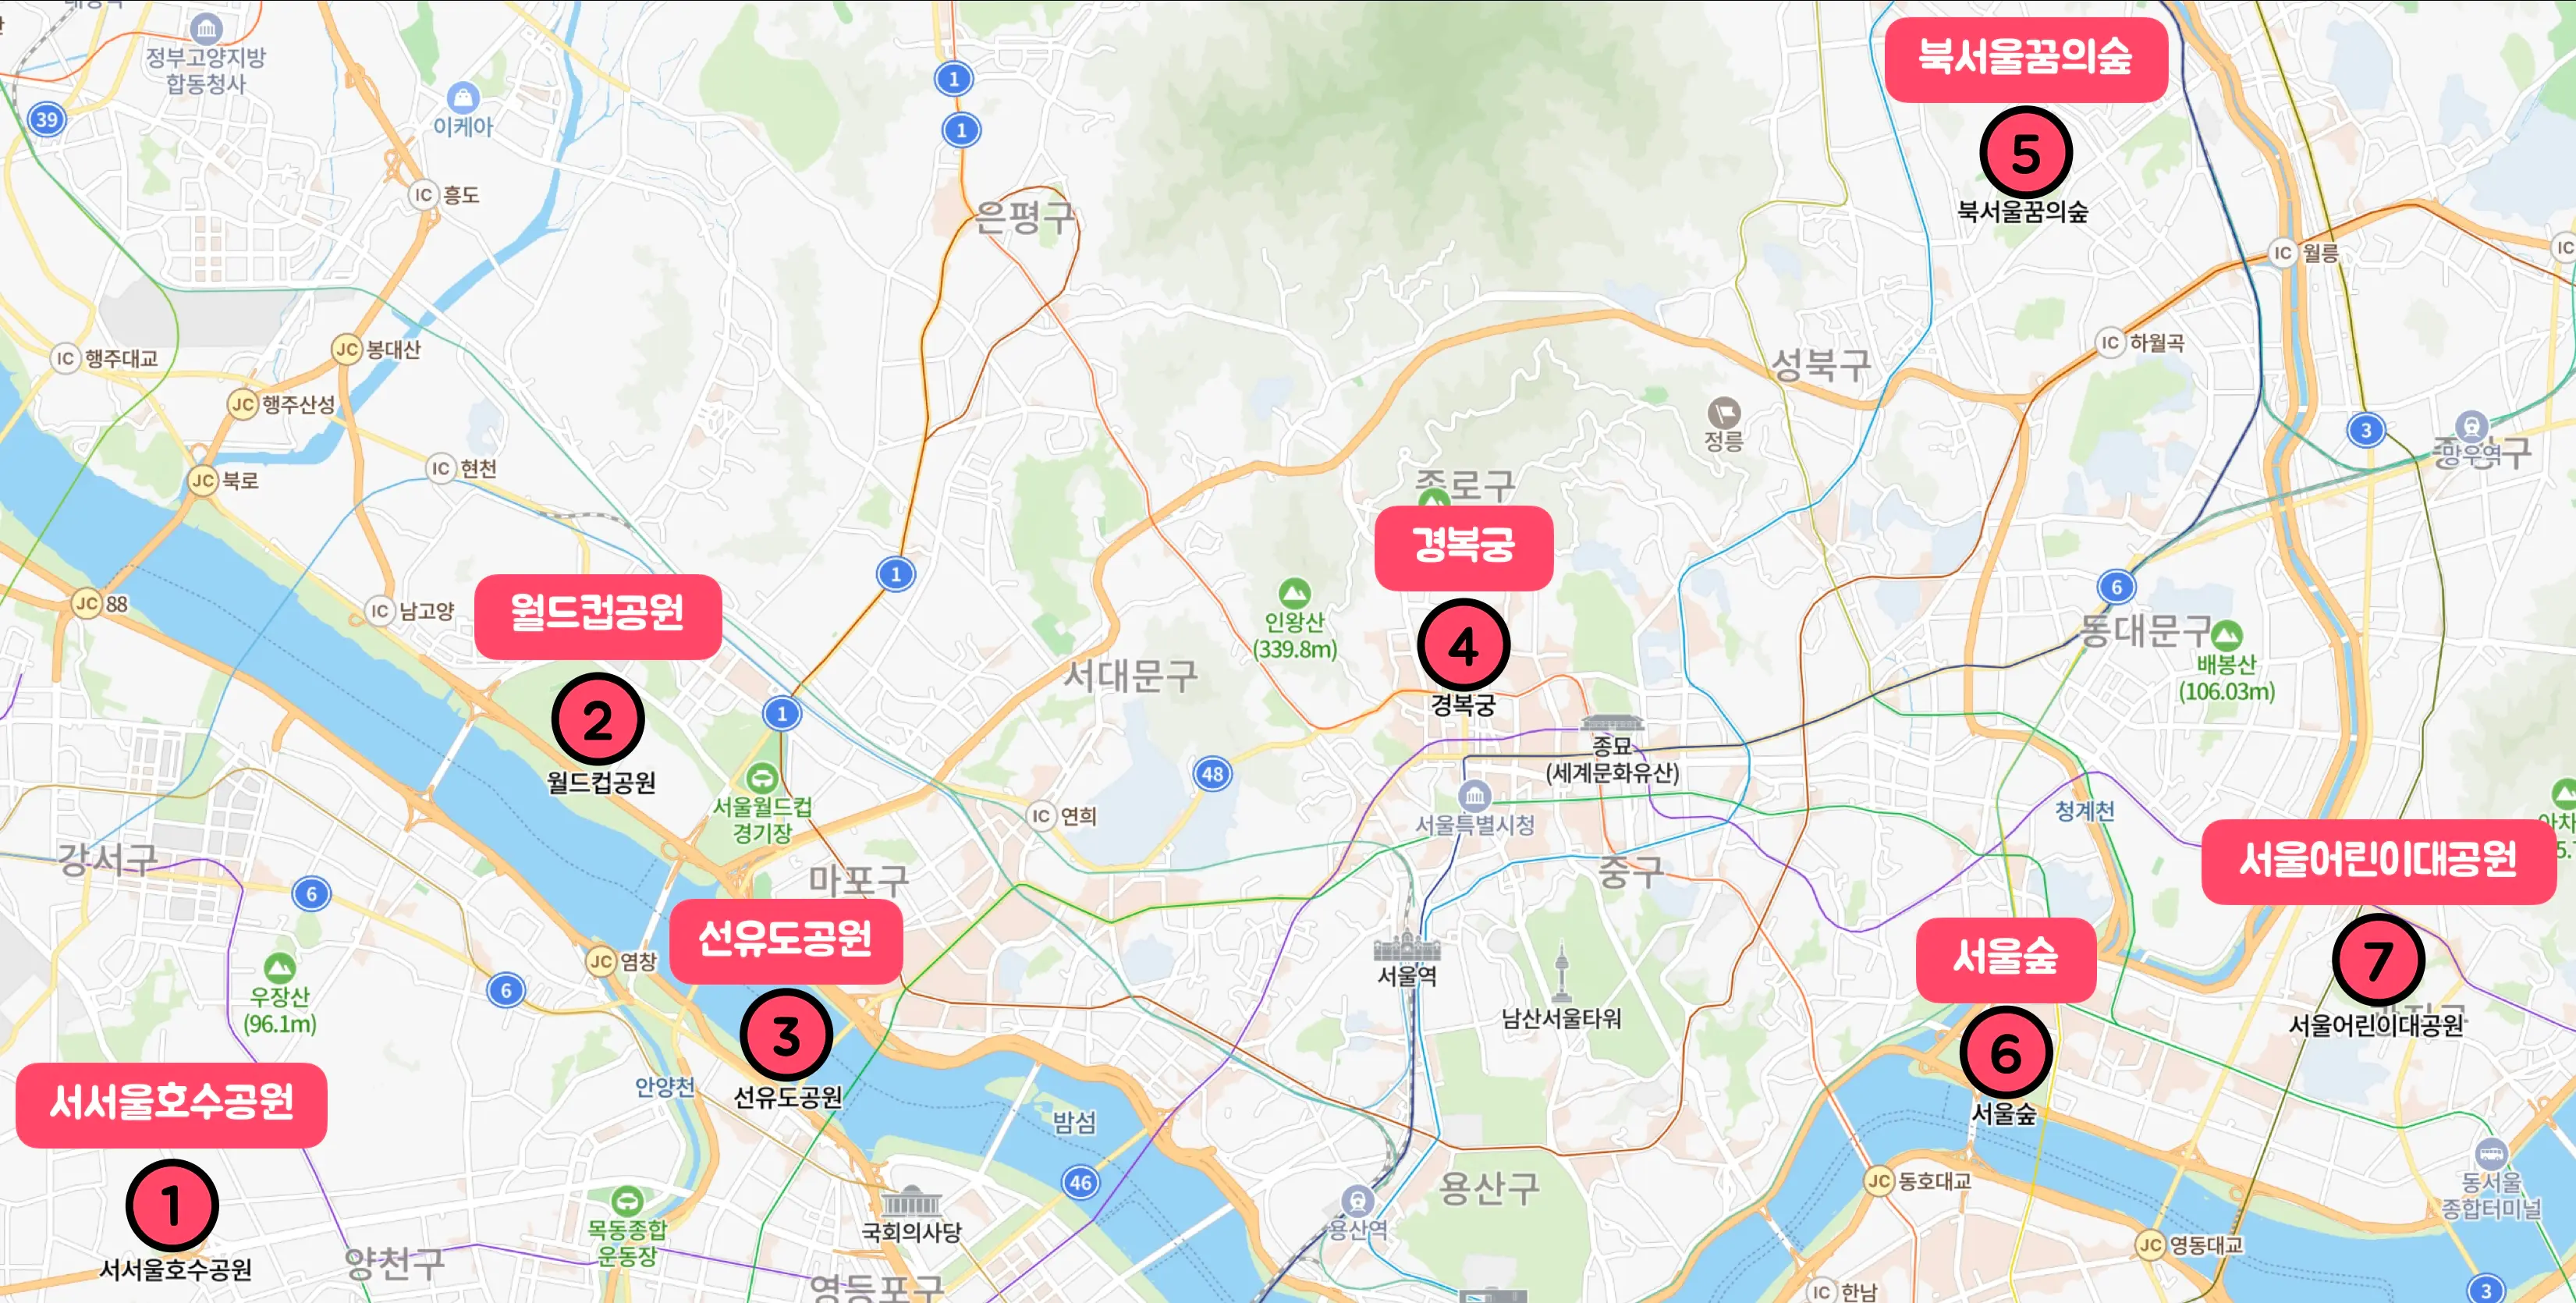 지도 위에 서울시 단풍 명소 7곳을 표시한 사진